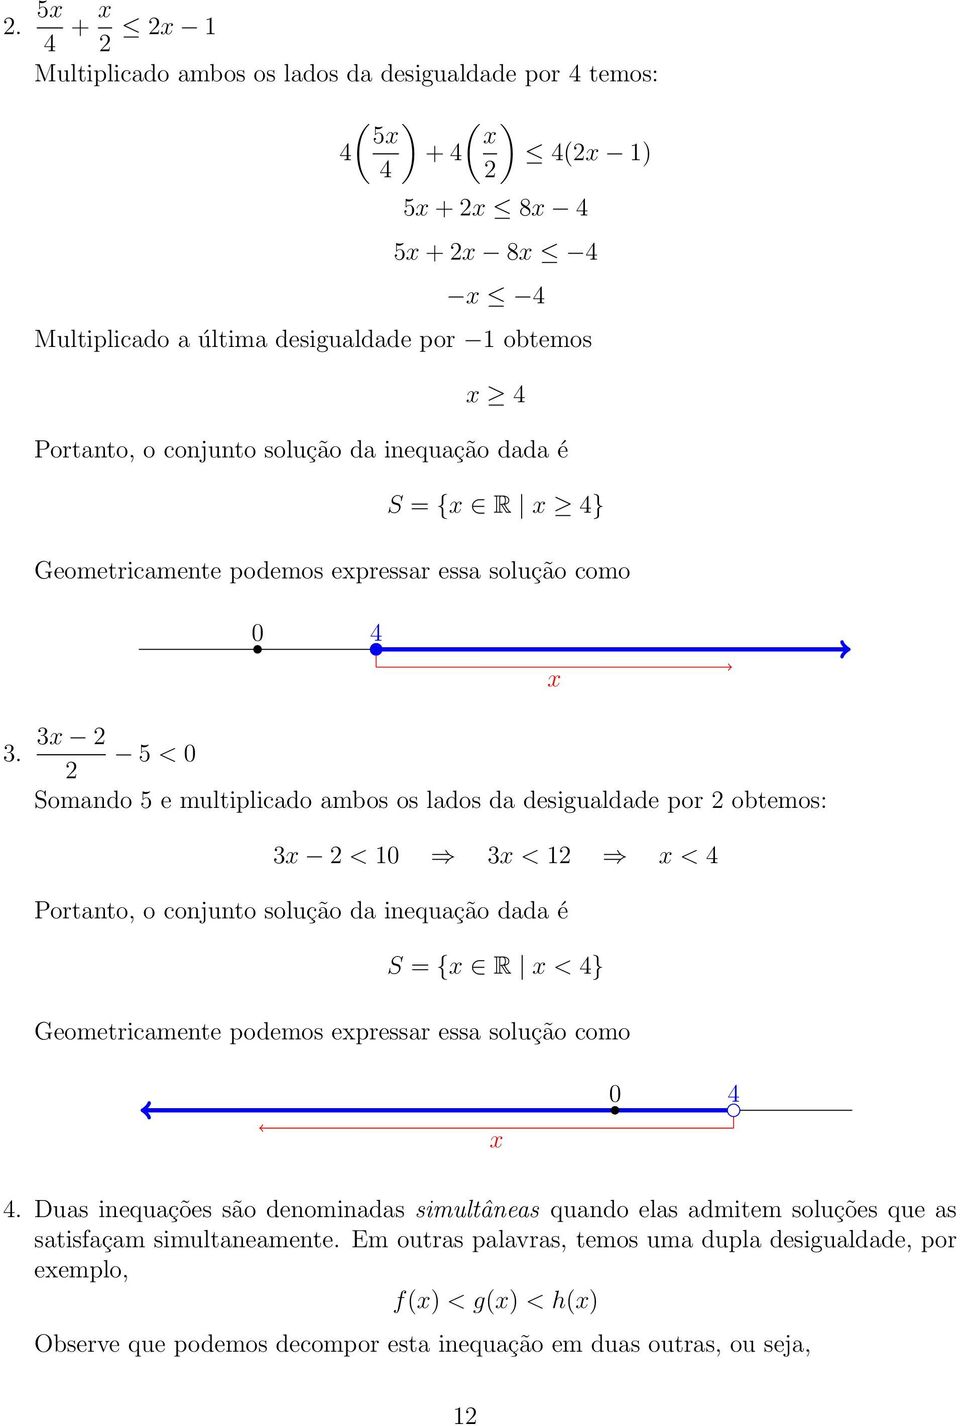 3x 5 < 0 Somando 5 e multiplicado ambos os lados da desigualdade por obtemos: 3x < 0 3x < x < 4 Portanto, o conjunto solução da inequação dada é S = {x R x < 4} Geometricamente podemos expressar